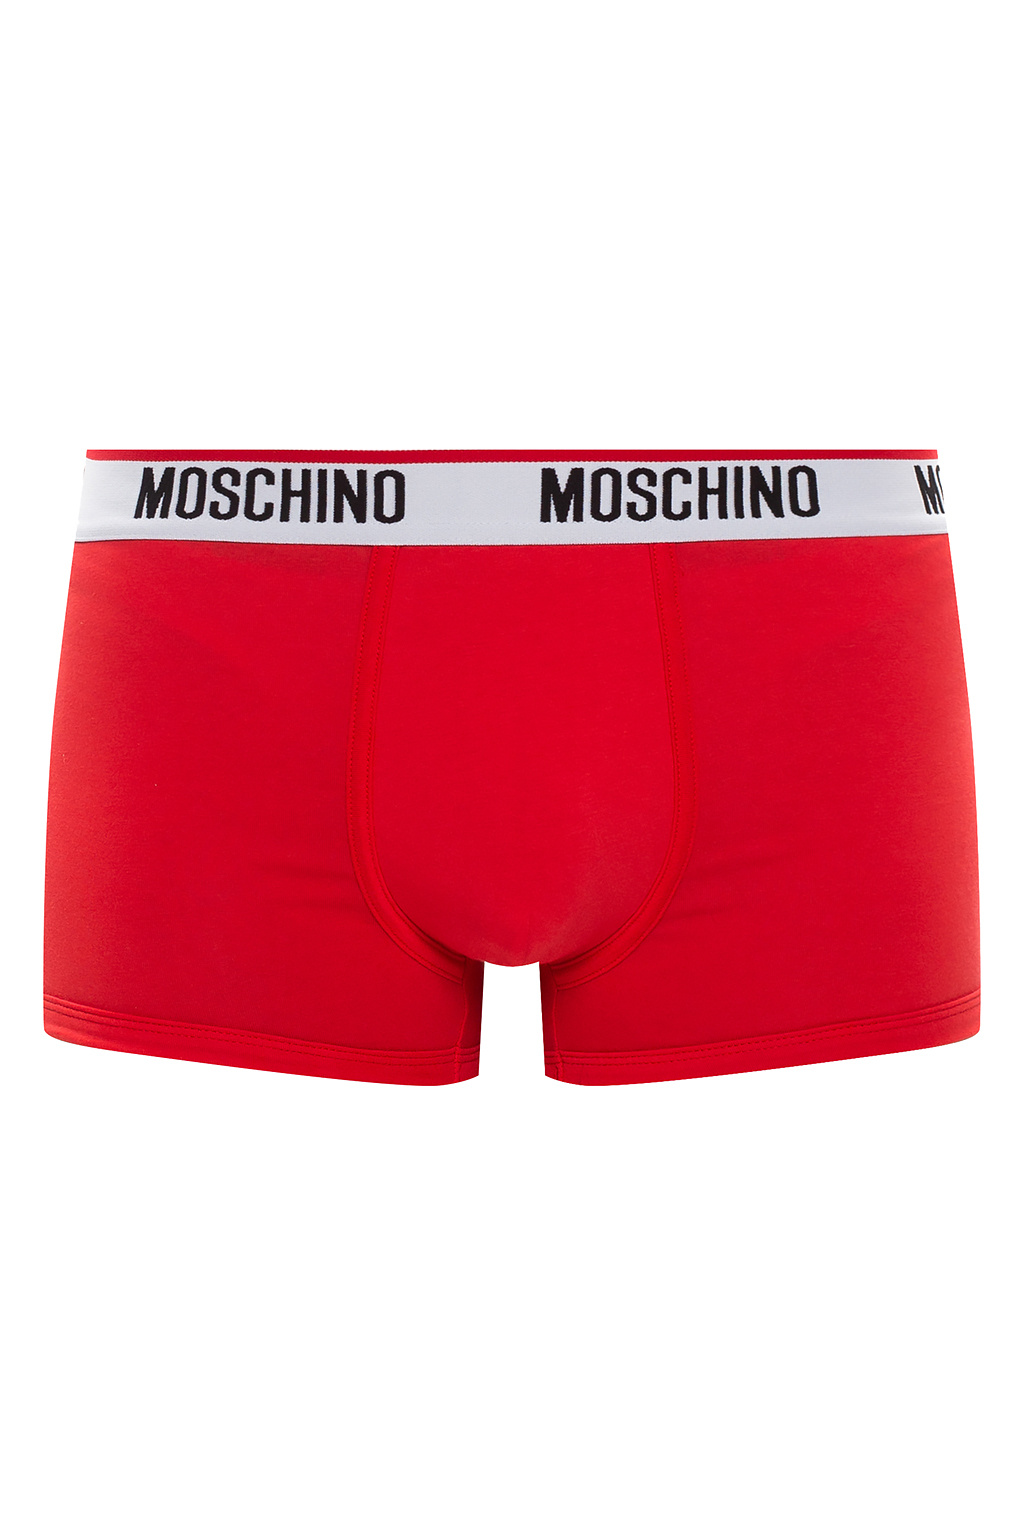 moschino boxers